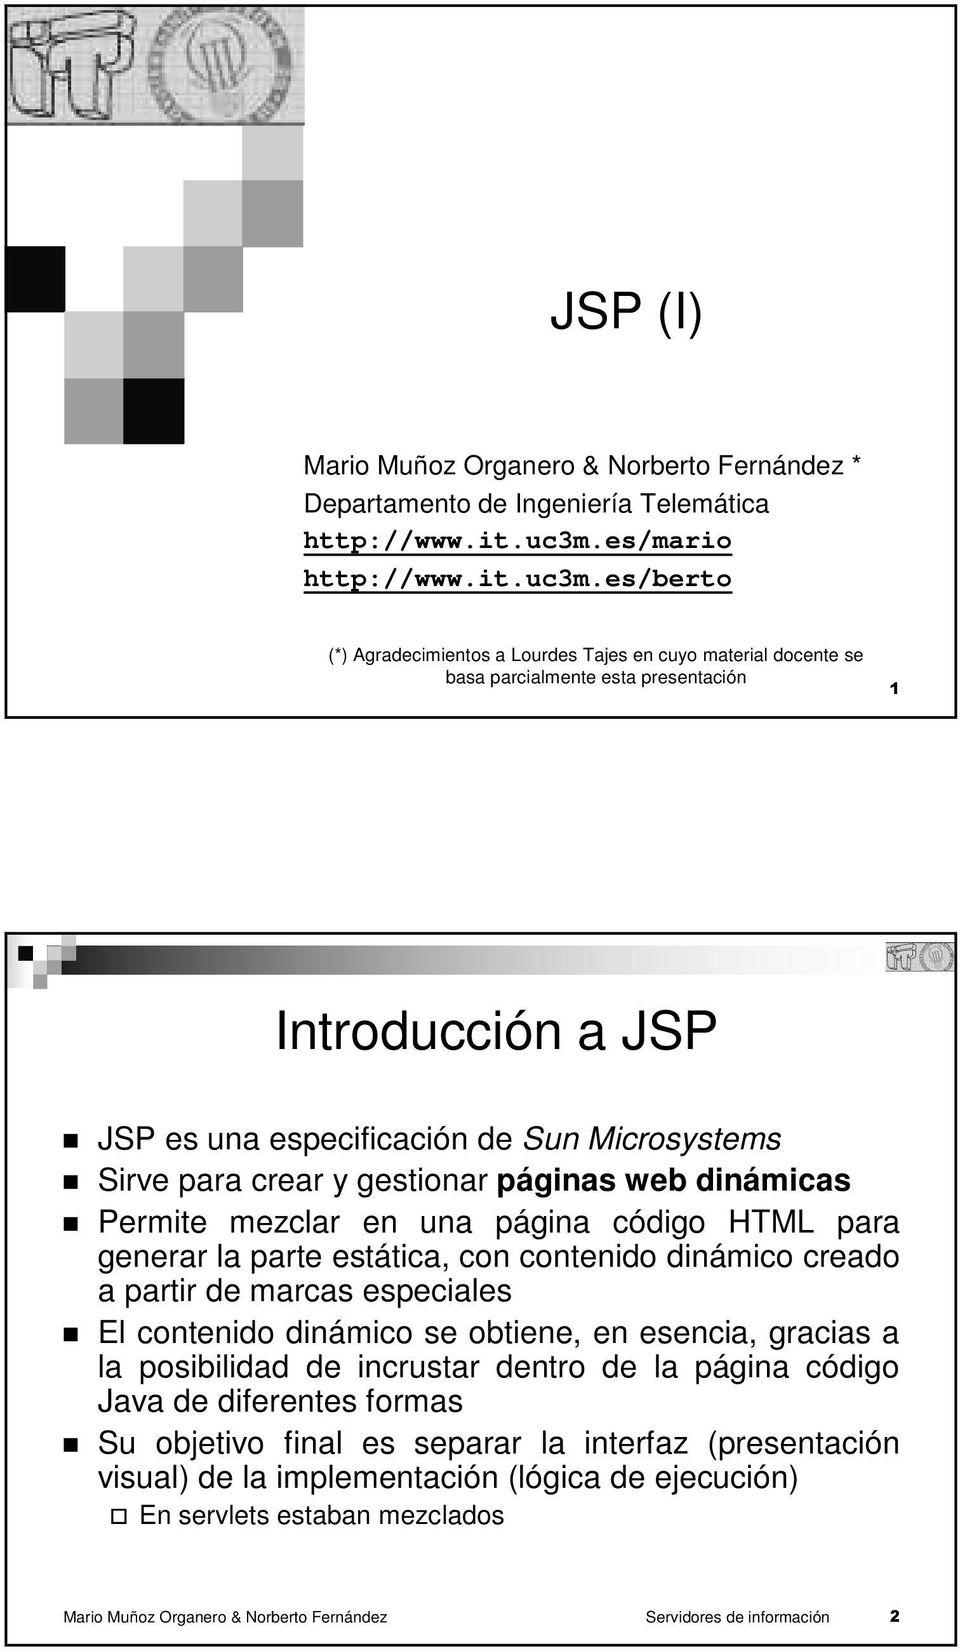 es/berto (*) Agradecimientos a Lourdes Tajes en cuyo material docente se basa parcialmente esta presentación 1 Introducción a JSP JSP es una especificación de Sun Microsystems Sirve para crear y